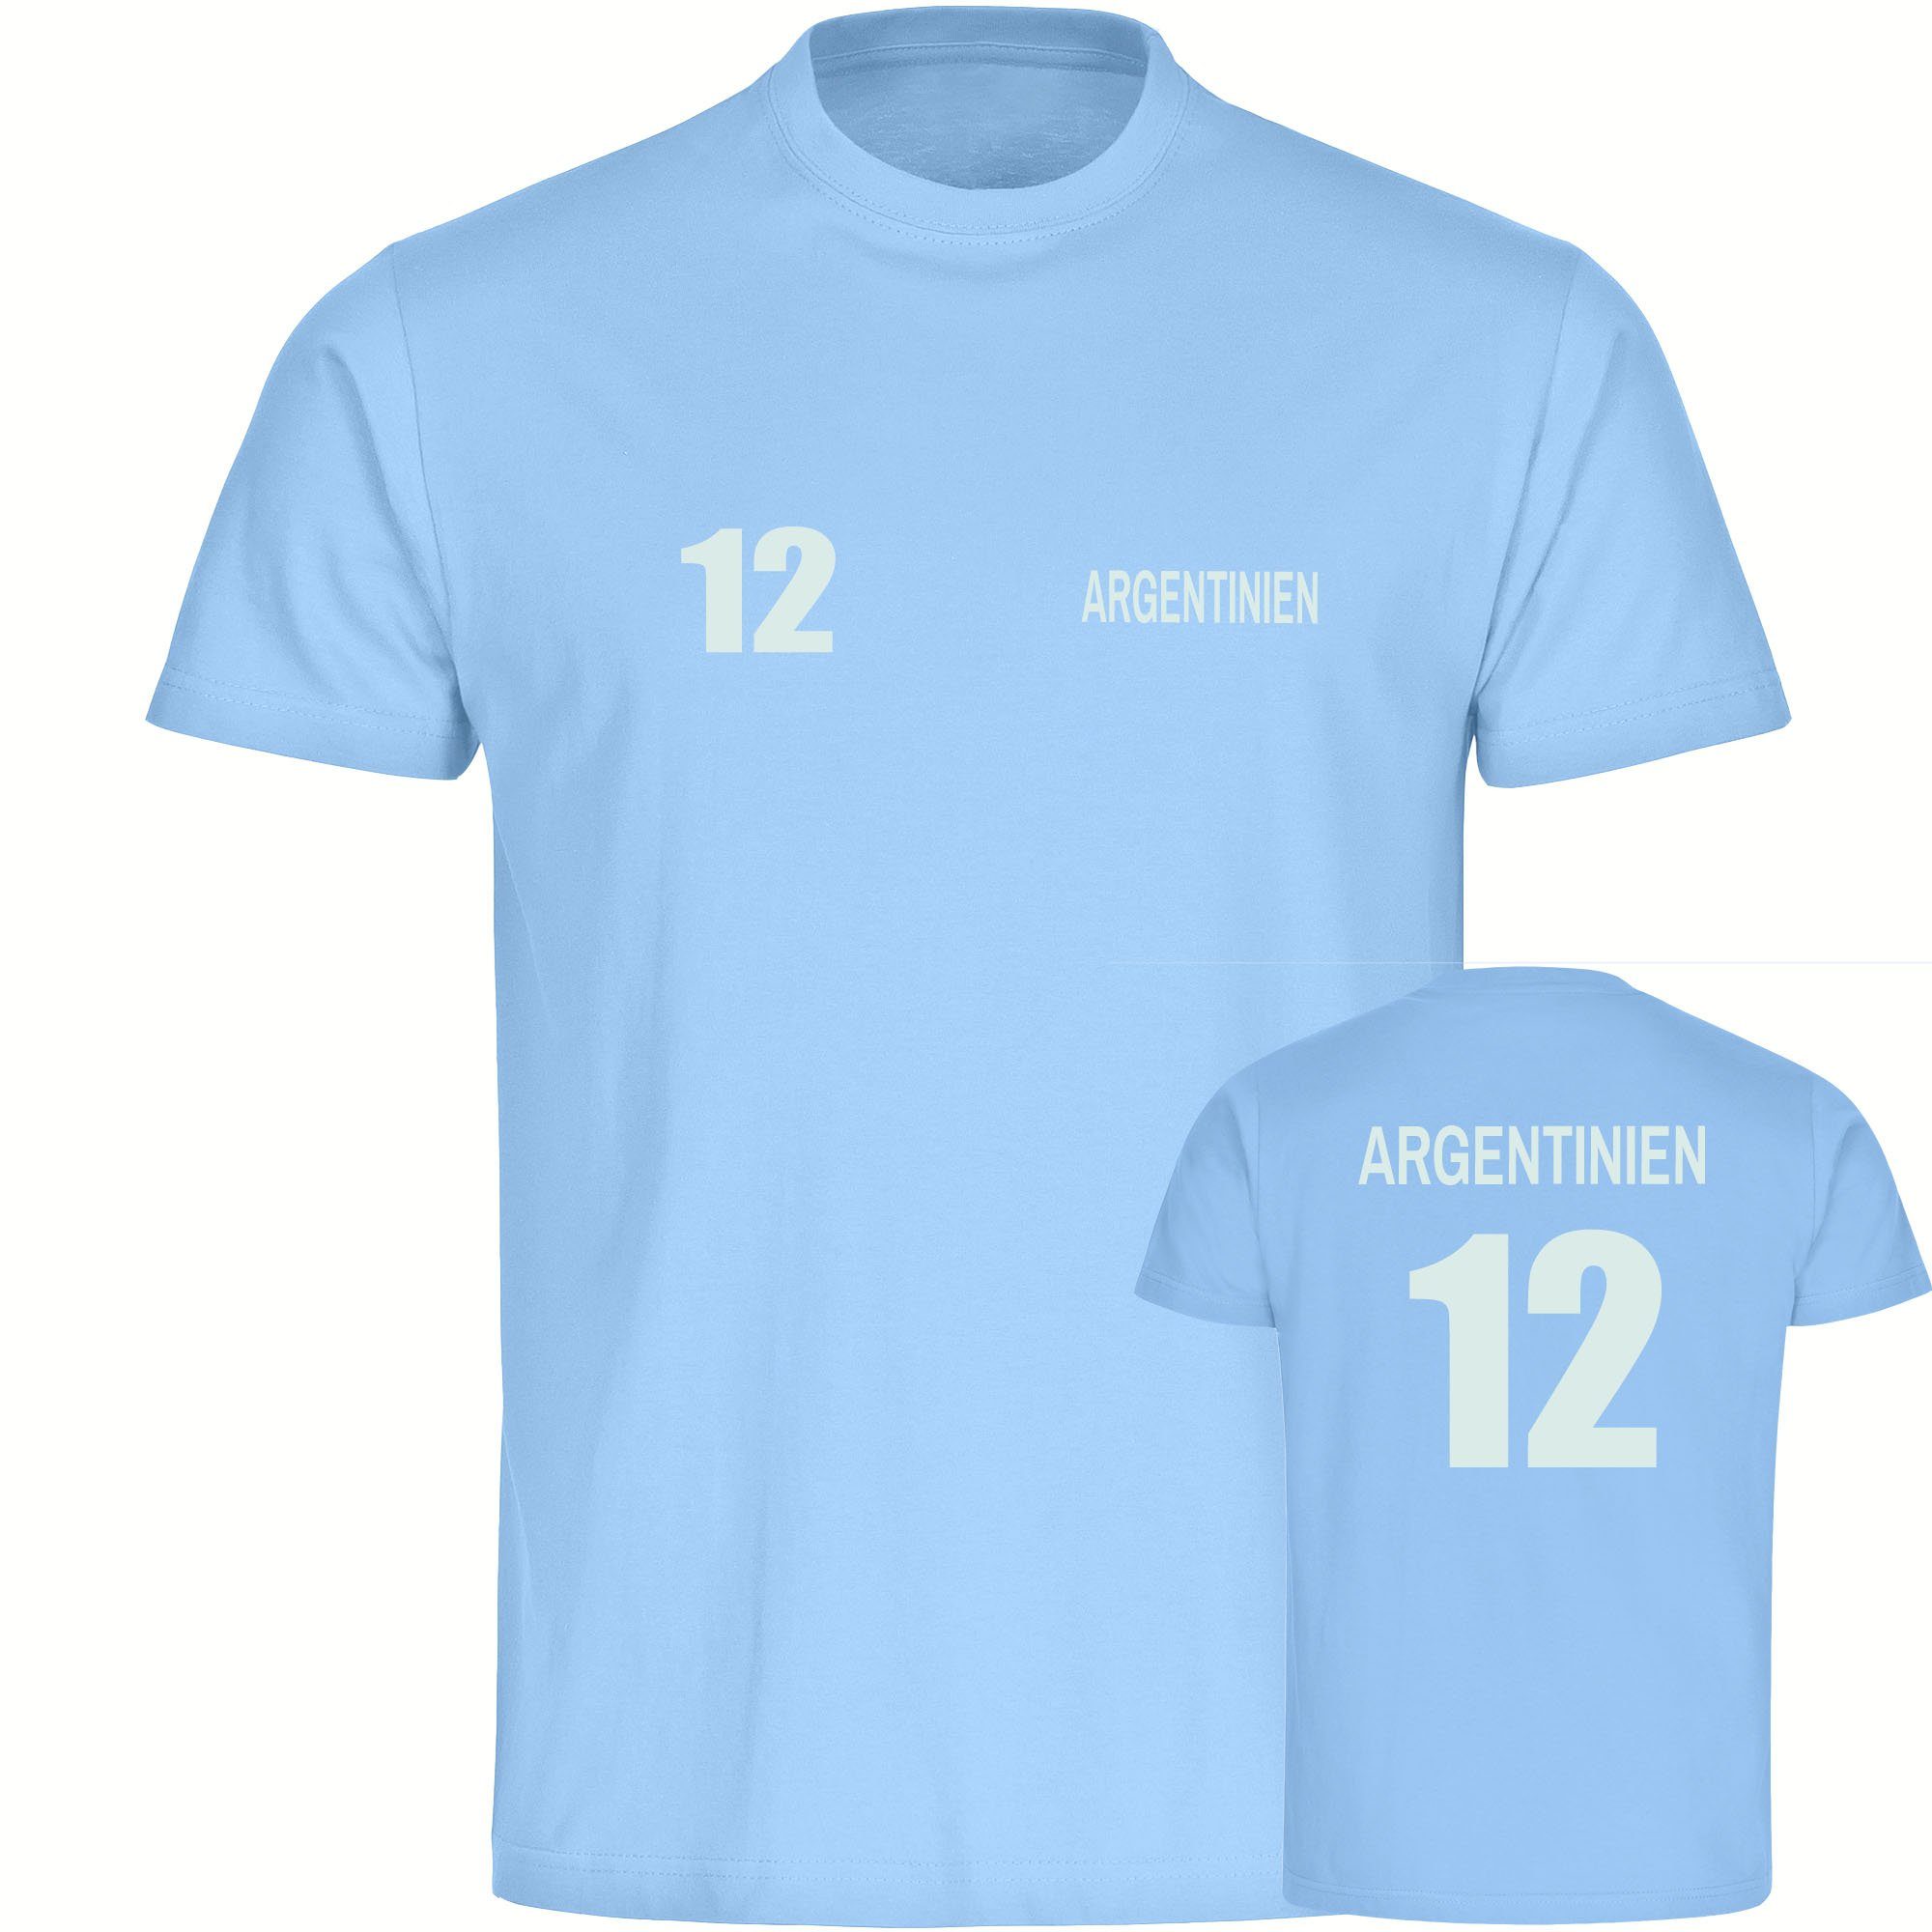 multifanshop T-Shirt Herren Argentinien - Trikot 12 - Männer